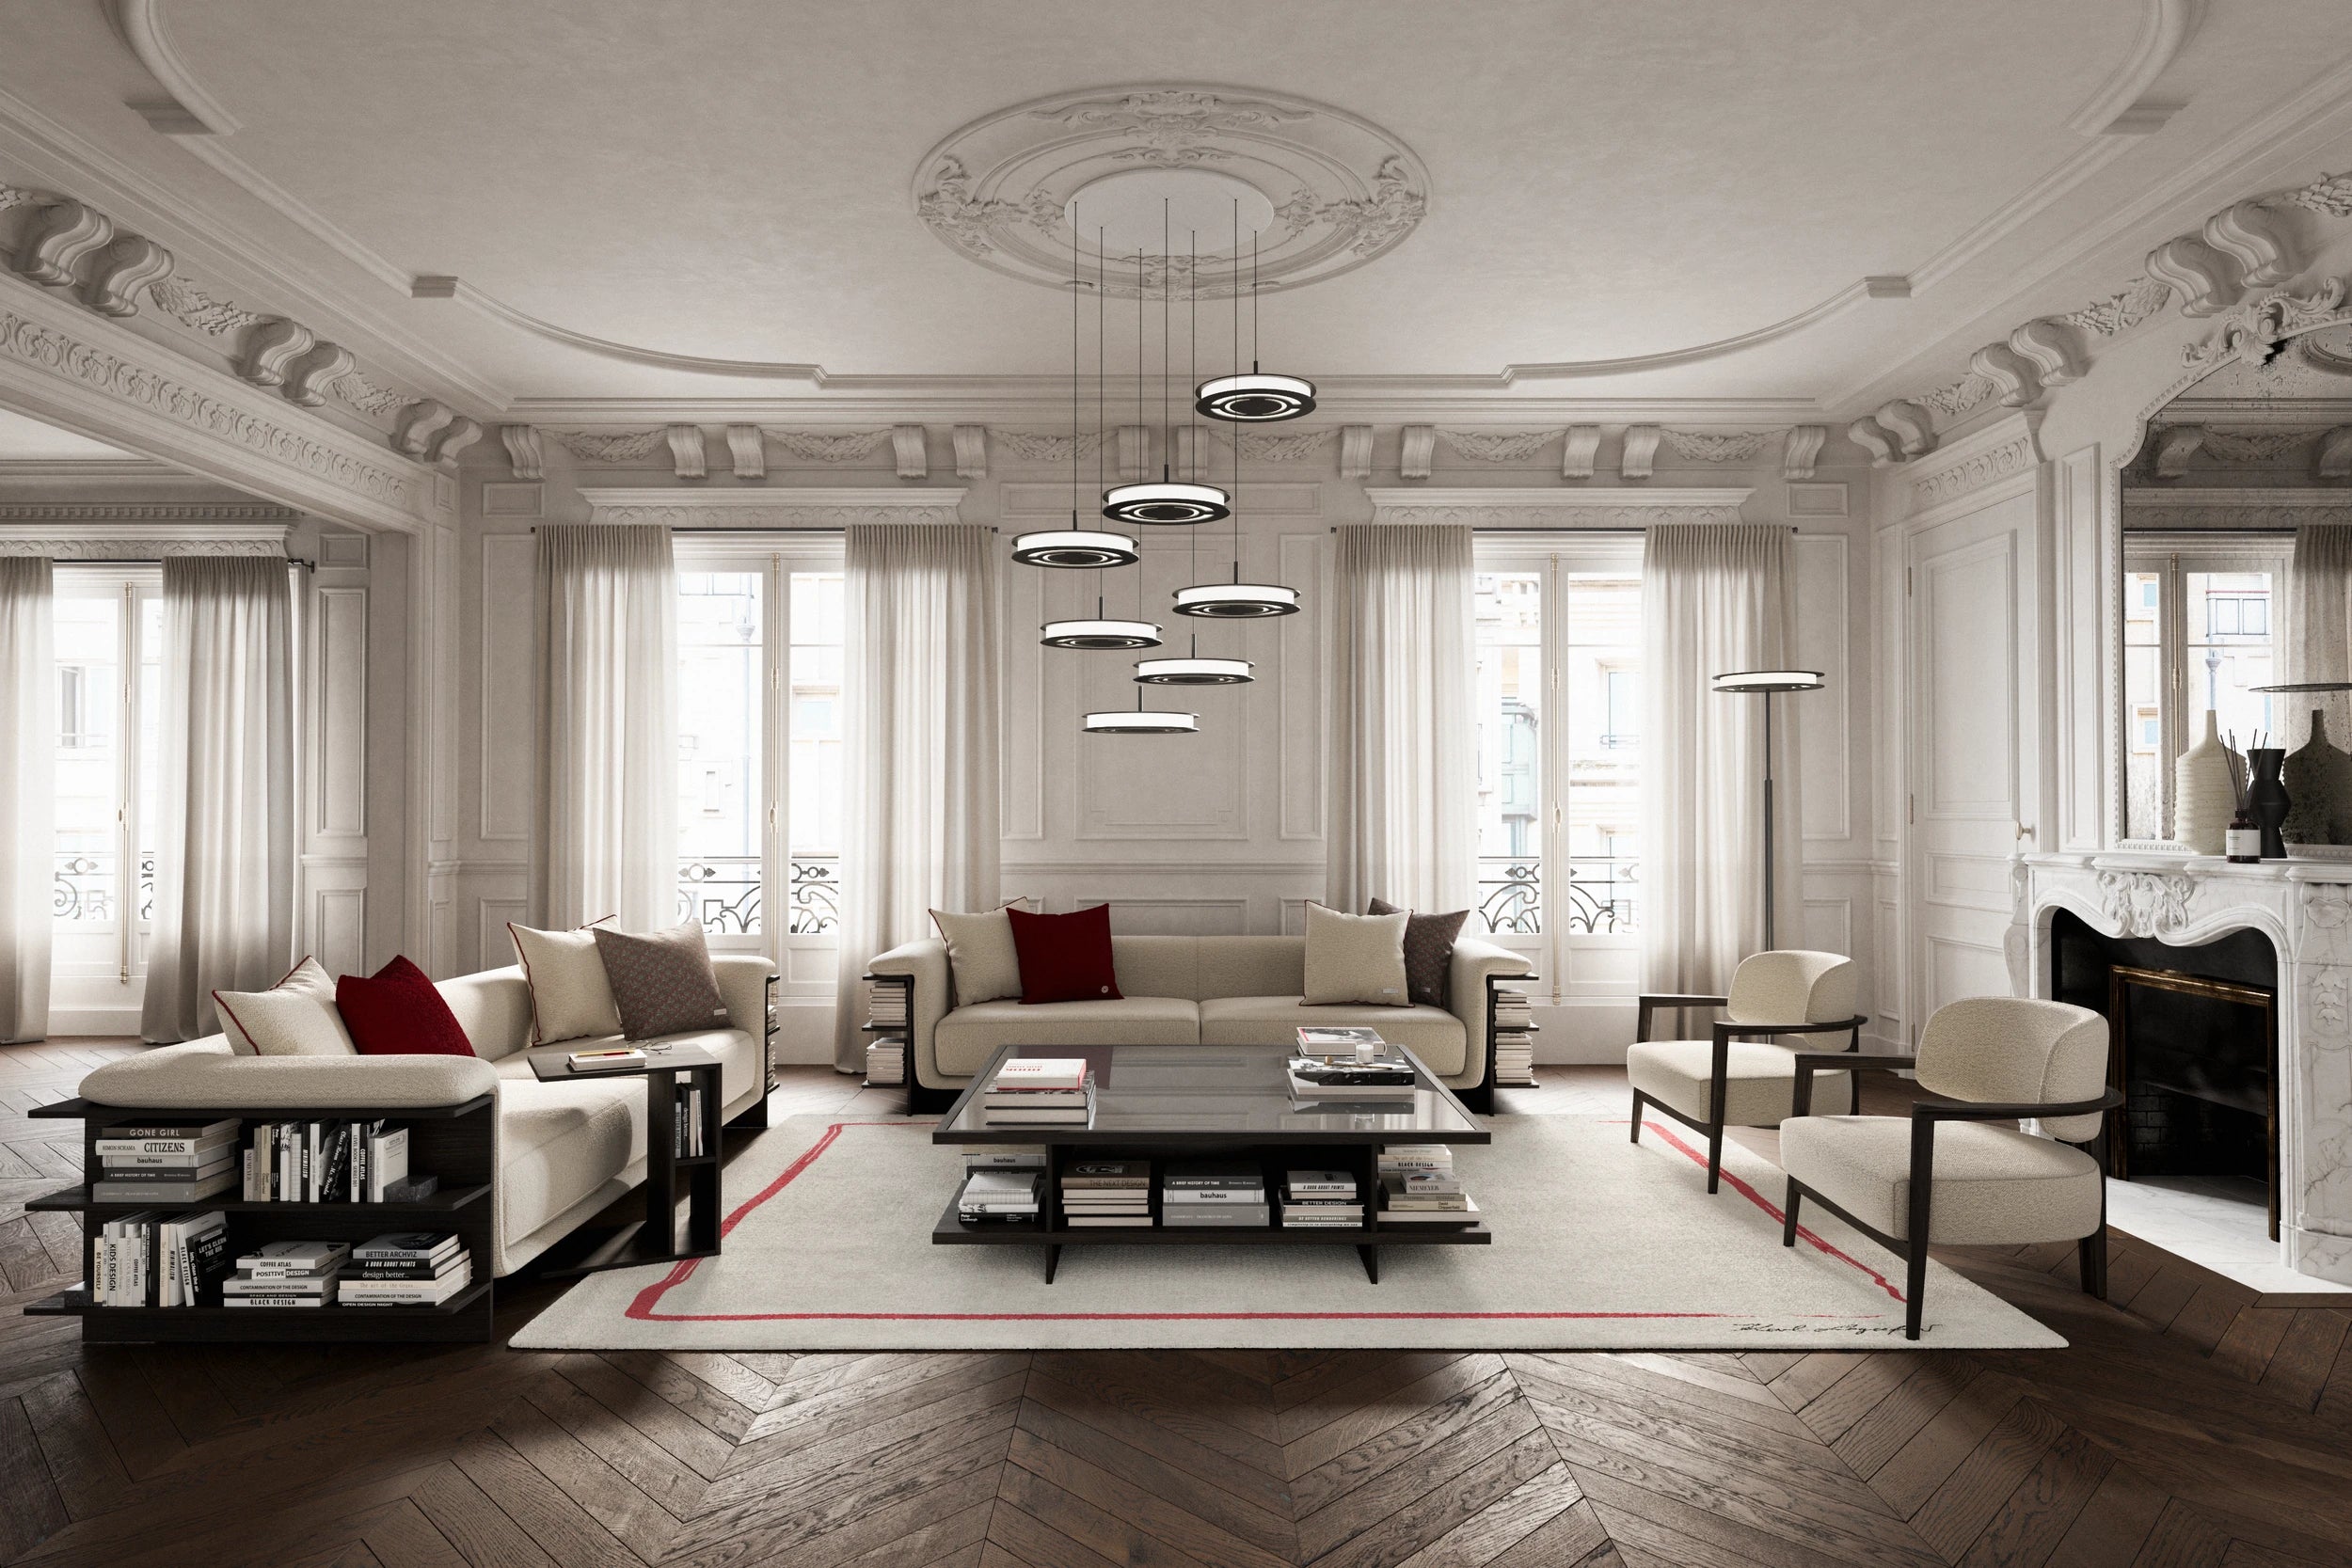 Saint-Germain living room